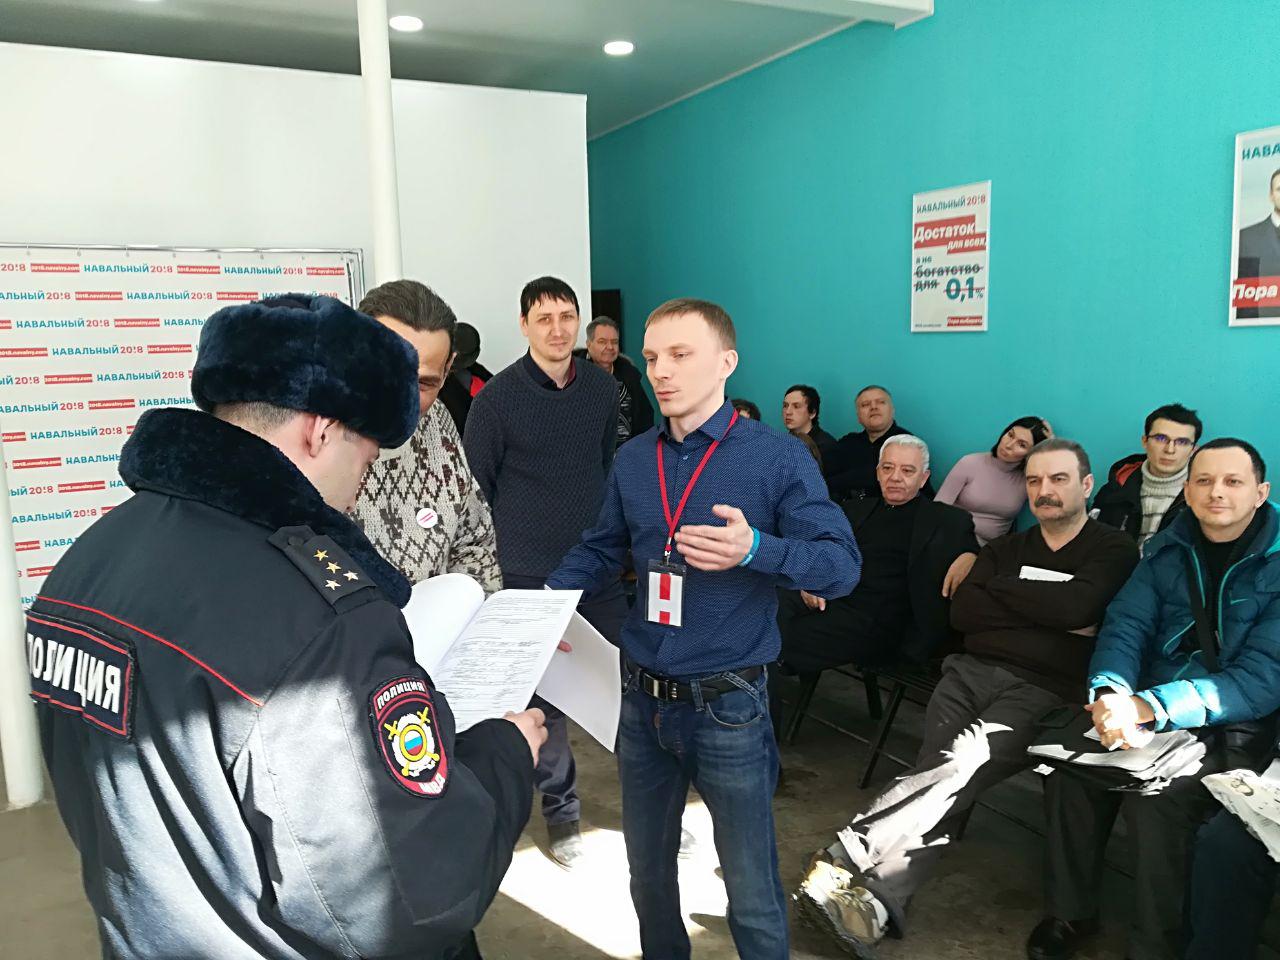 Во время лекции для наблюдателей в саратовский штаб Навального пришла полиция